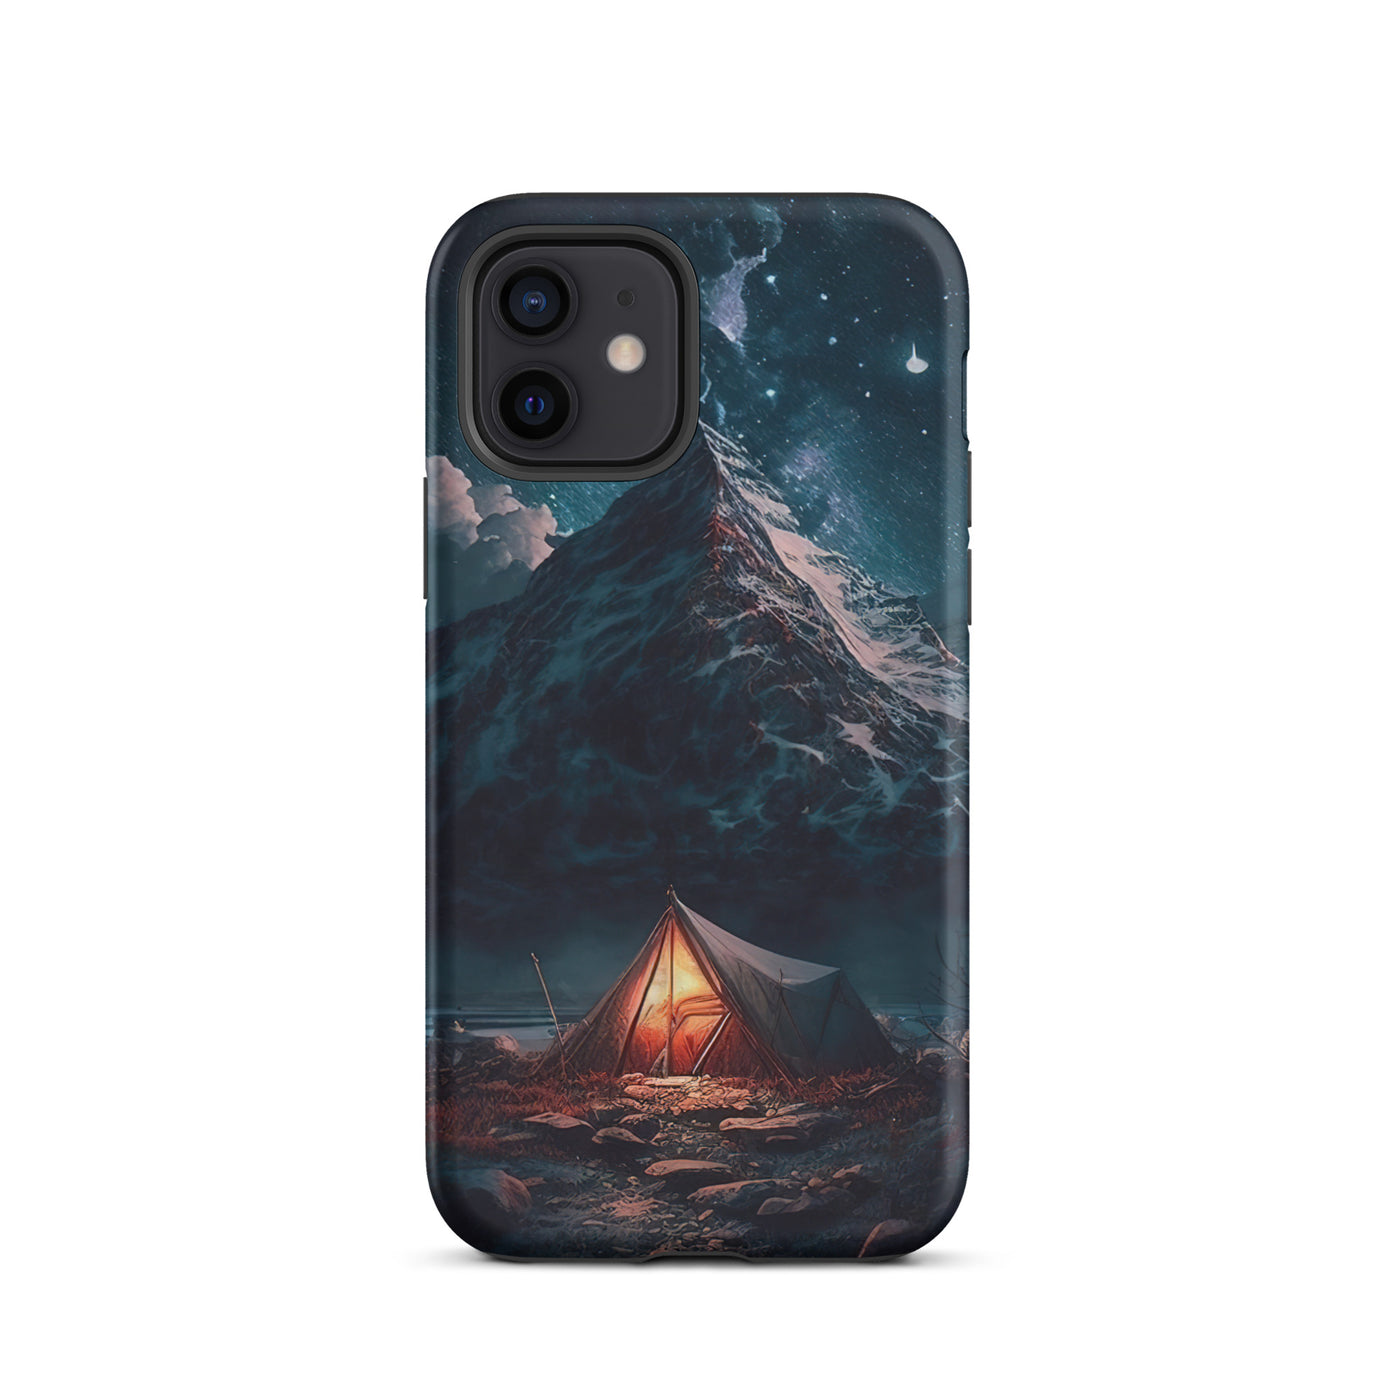 Zelt und Berg in der Nacht - Sterne am Himmel - Landschaftsmalerei - iPhone Schutzhülle (robust) camping xxx iPhone 12